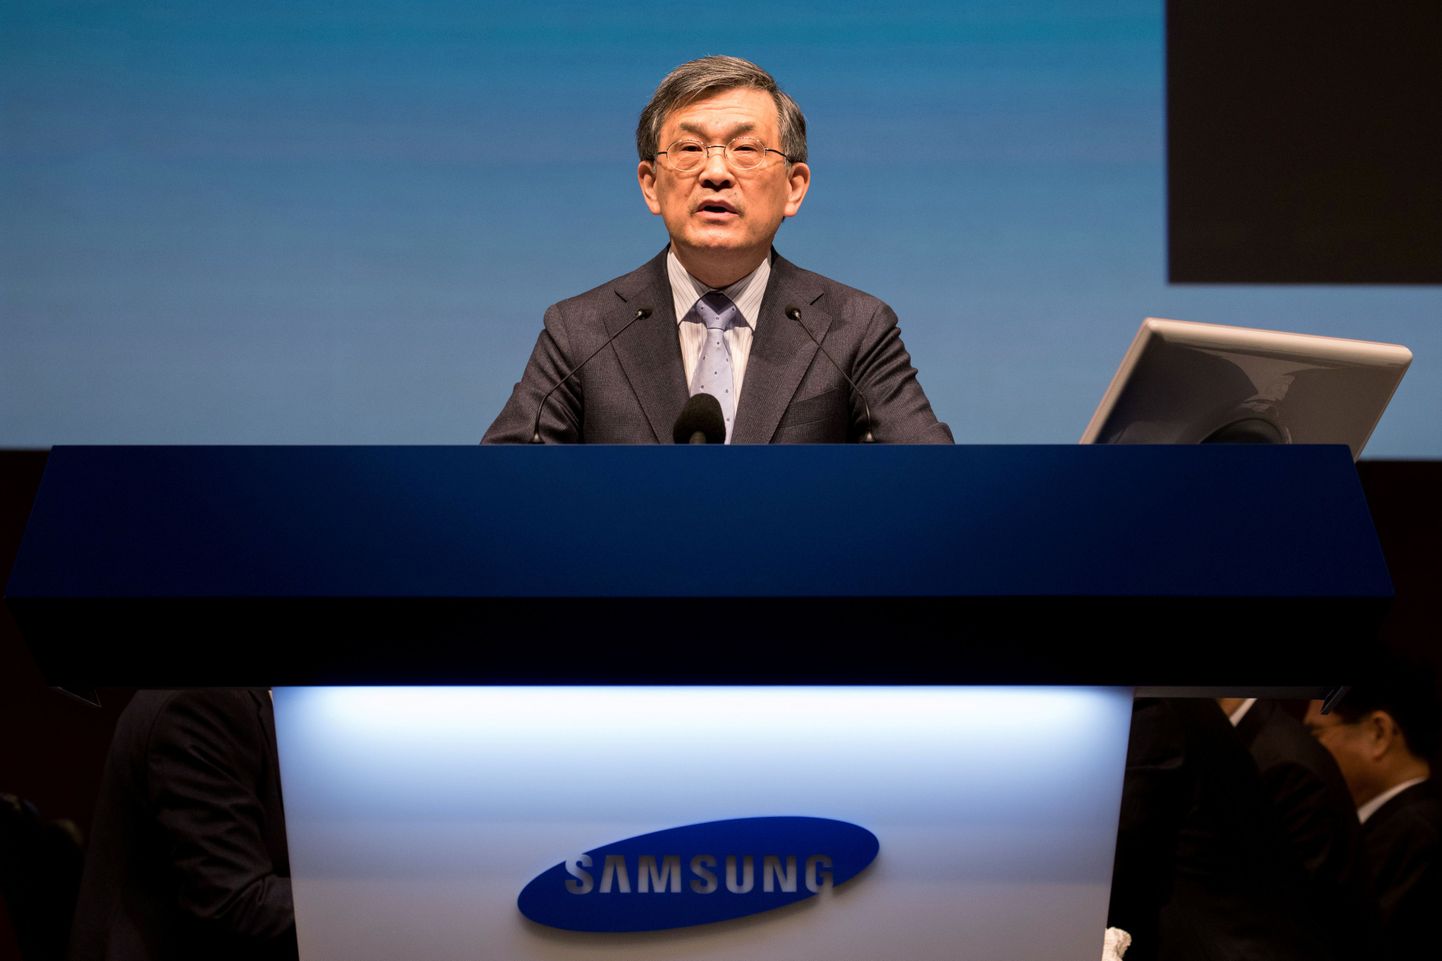 Samsungi tegevjuht Kwon Oh-Hyun loobus ametist.